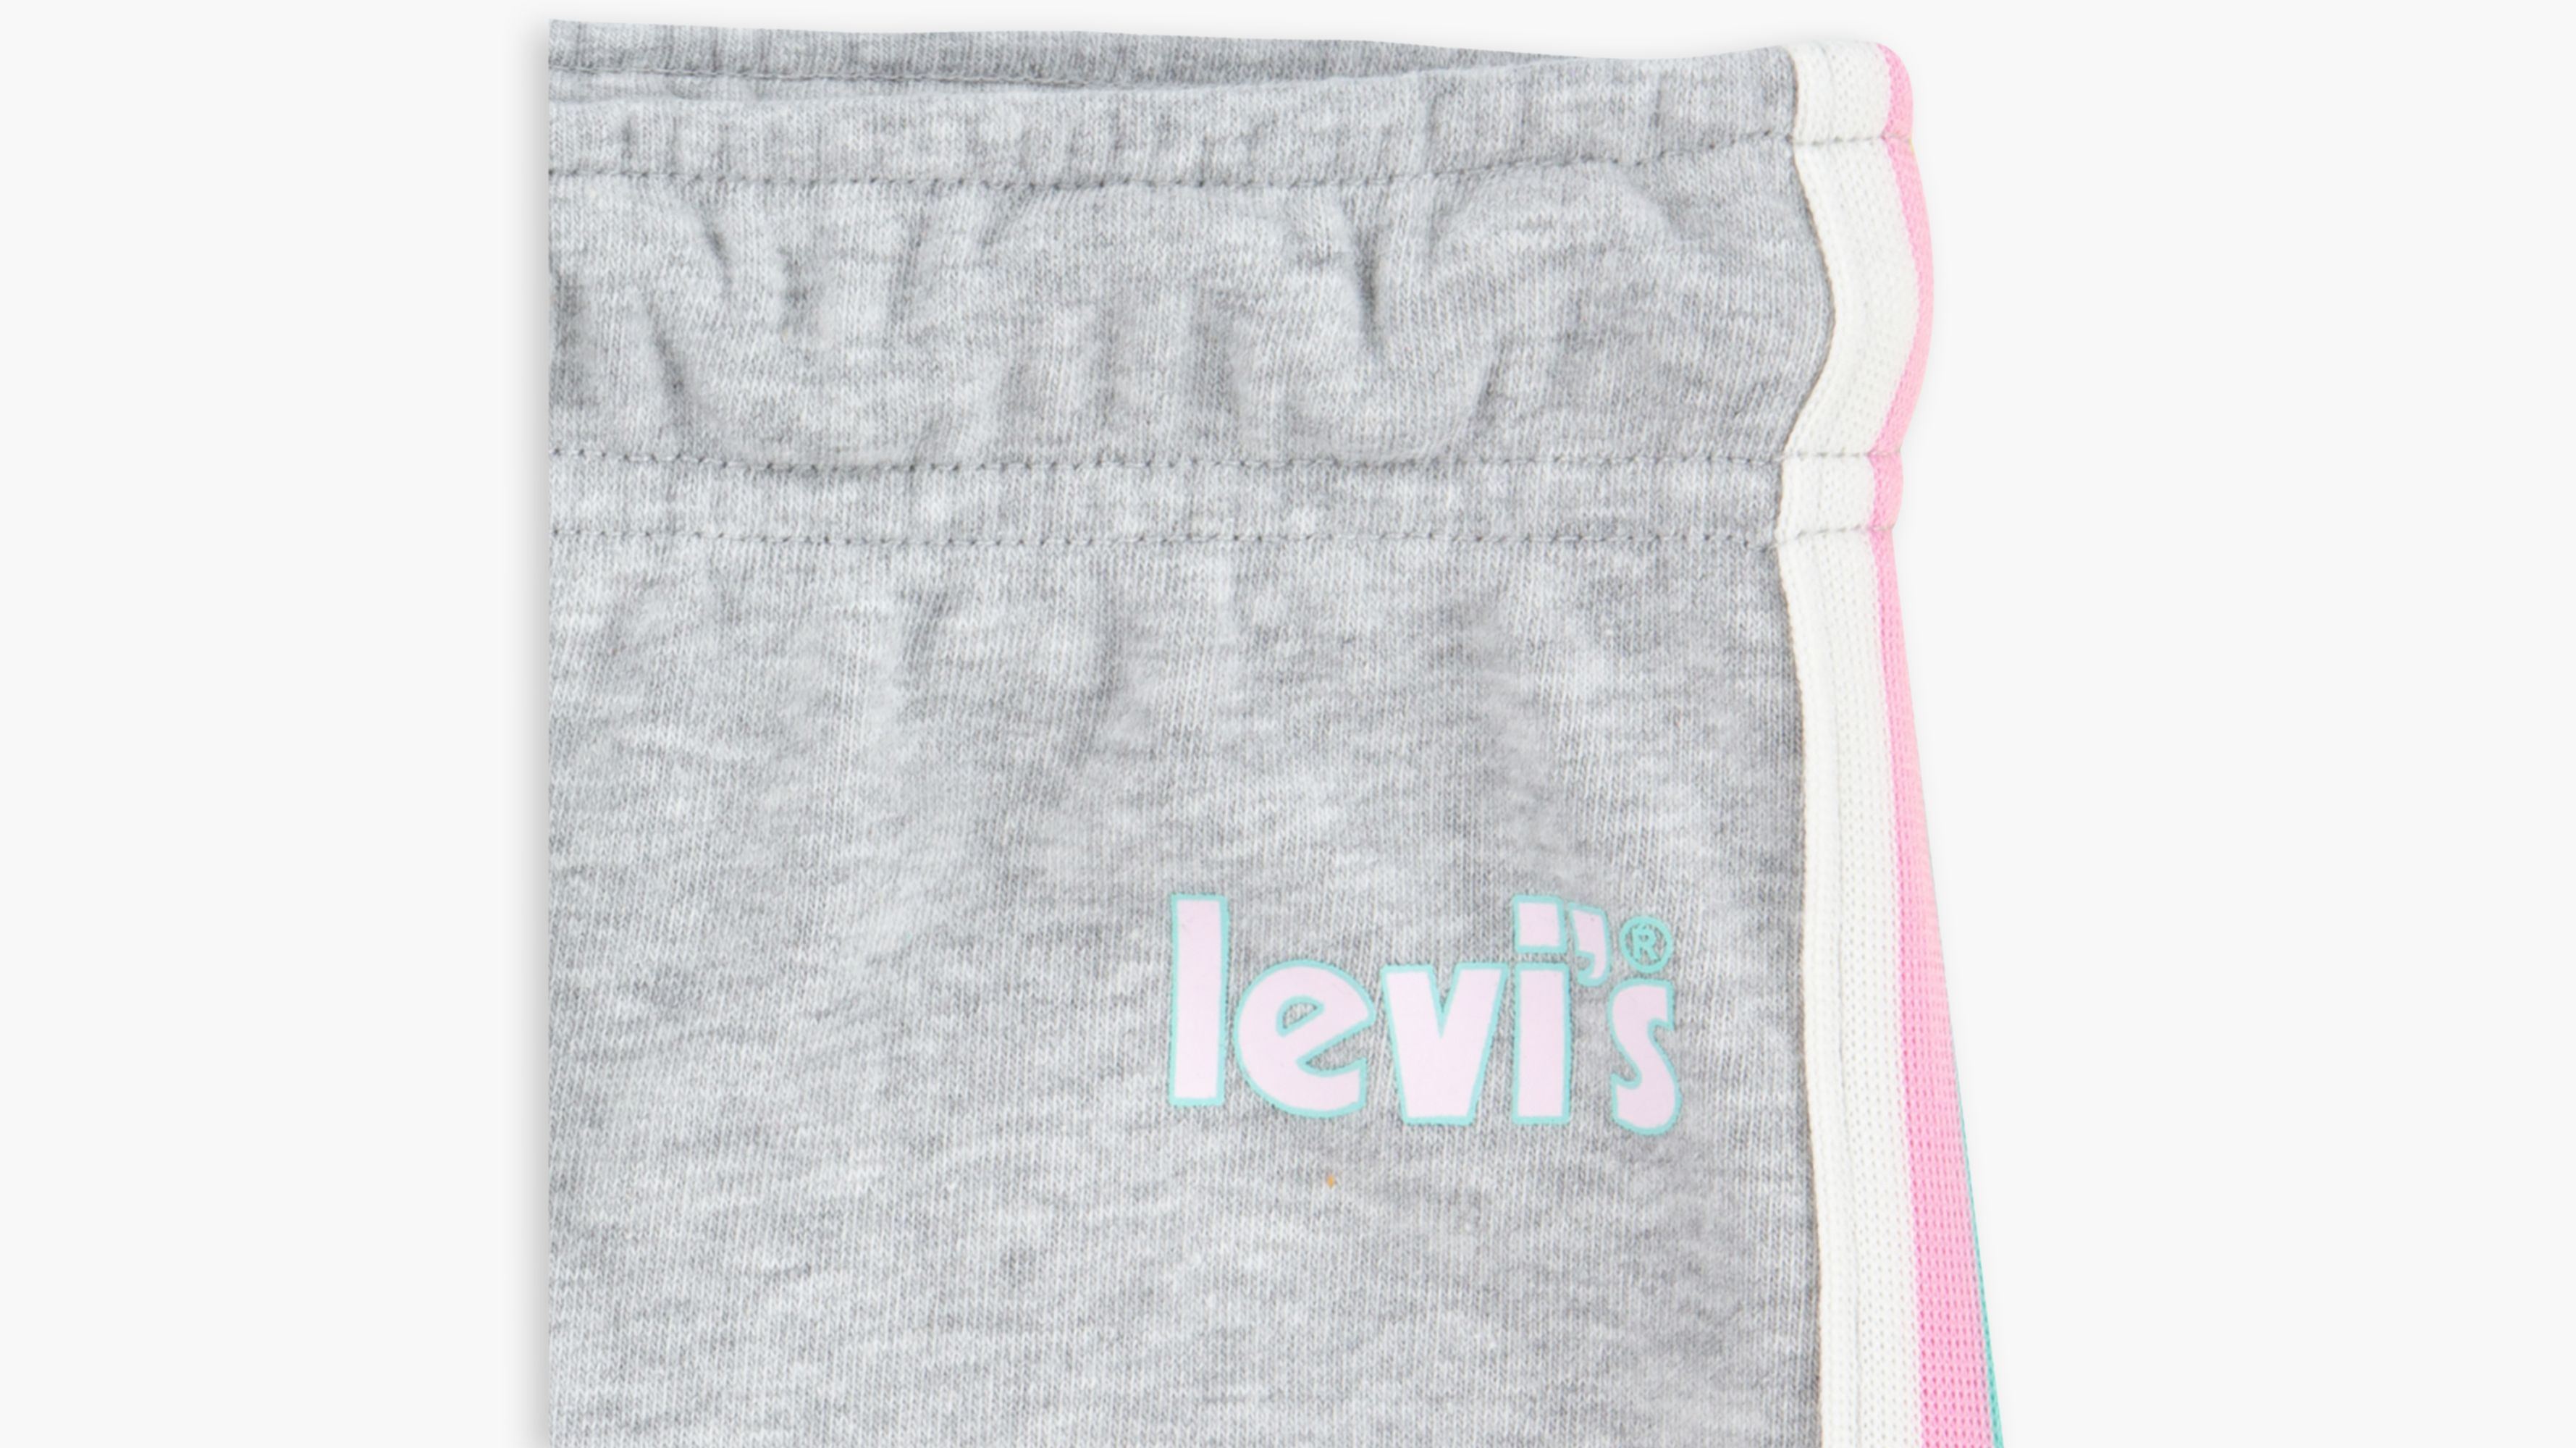 Levi's® Knit Joggers Big Girls S-xl - Pink